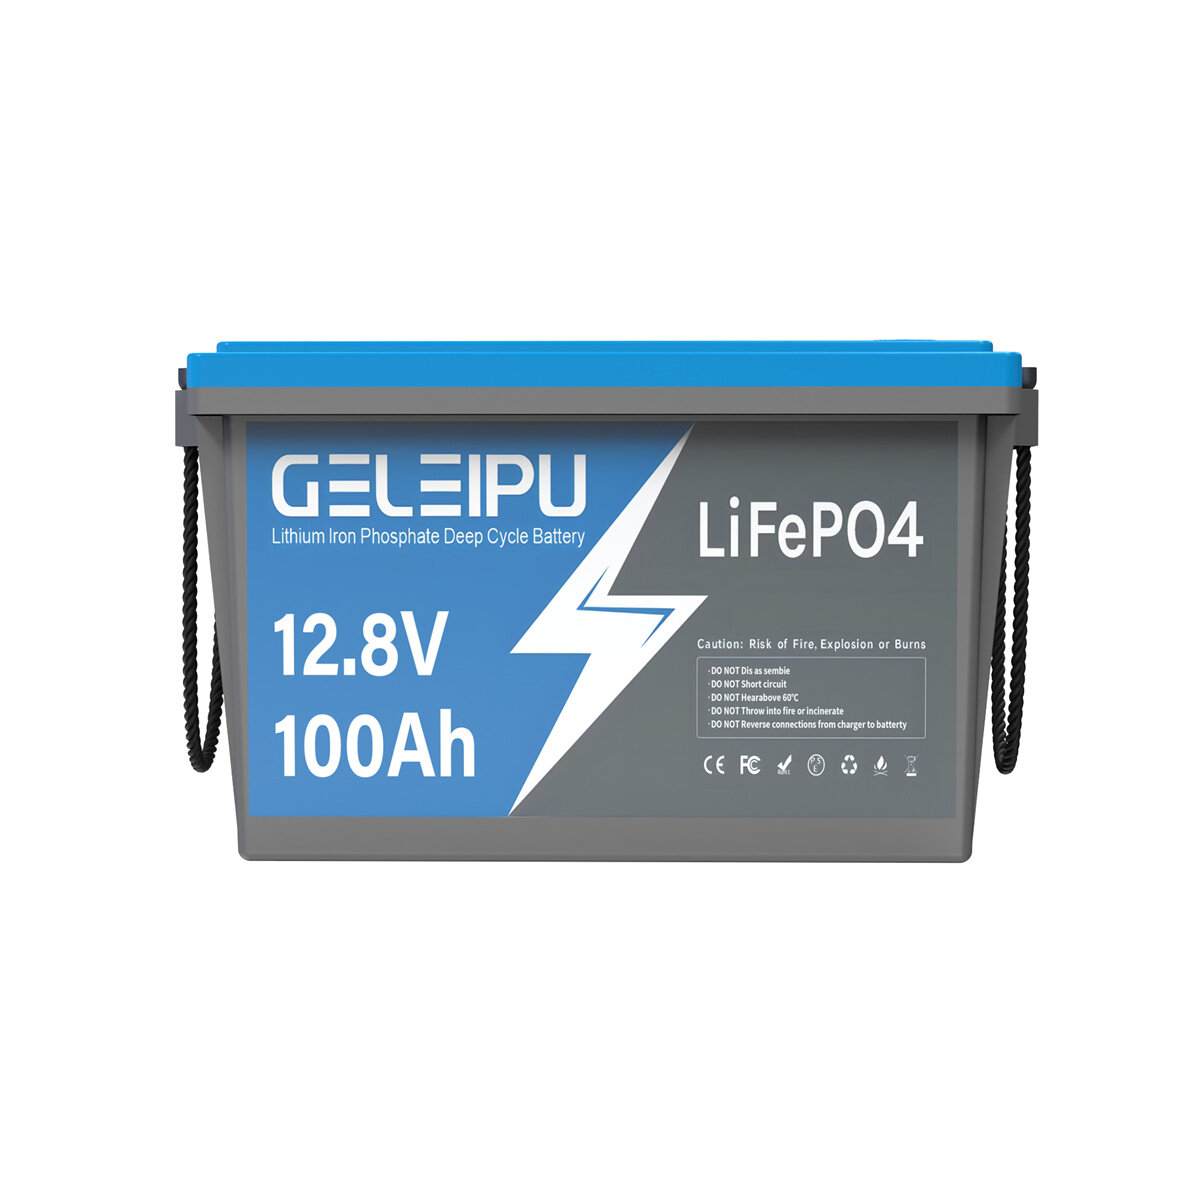 [EU Direct] Batterie LiFePO4 GELEIPU 12V 12.8V 100Ah, 1280Wh rechargeable au lithium incorporant un BMS 100A, avec 4000-15000 cycles, parfaite pour moteur de pêche et système solaire